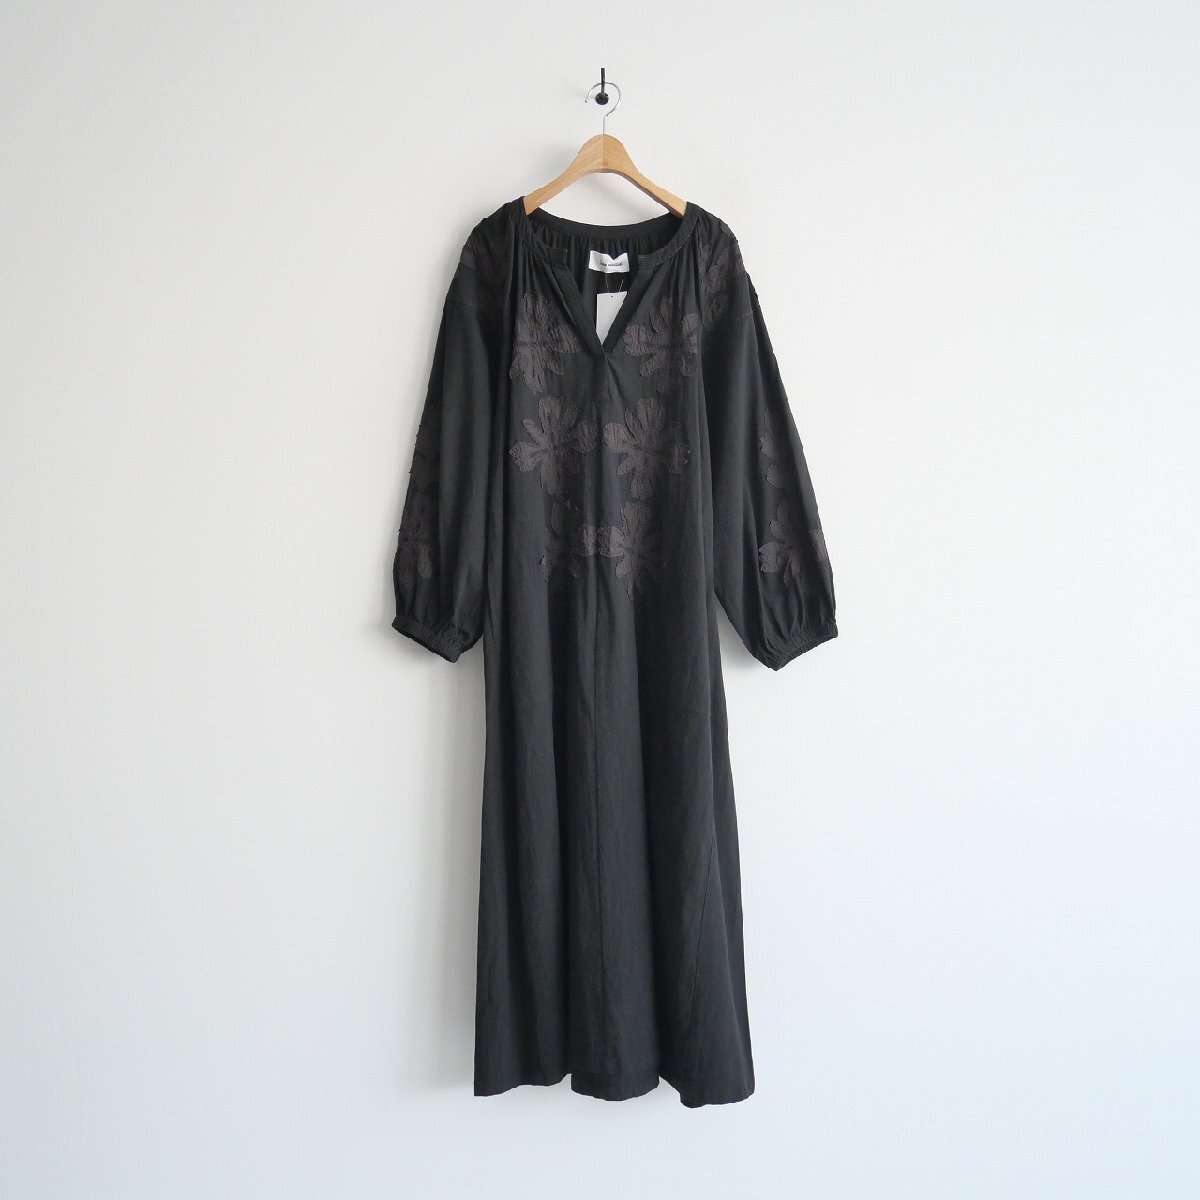 継続販売品 / Sara mallika サラマリカ / Cotton Flower Patchwork Dress ワンピース S / 020432SA1 / 2403-0352_画像1